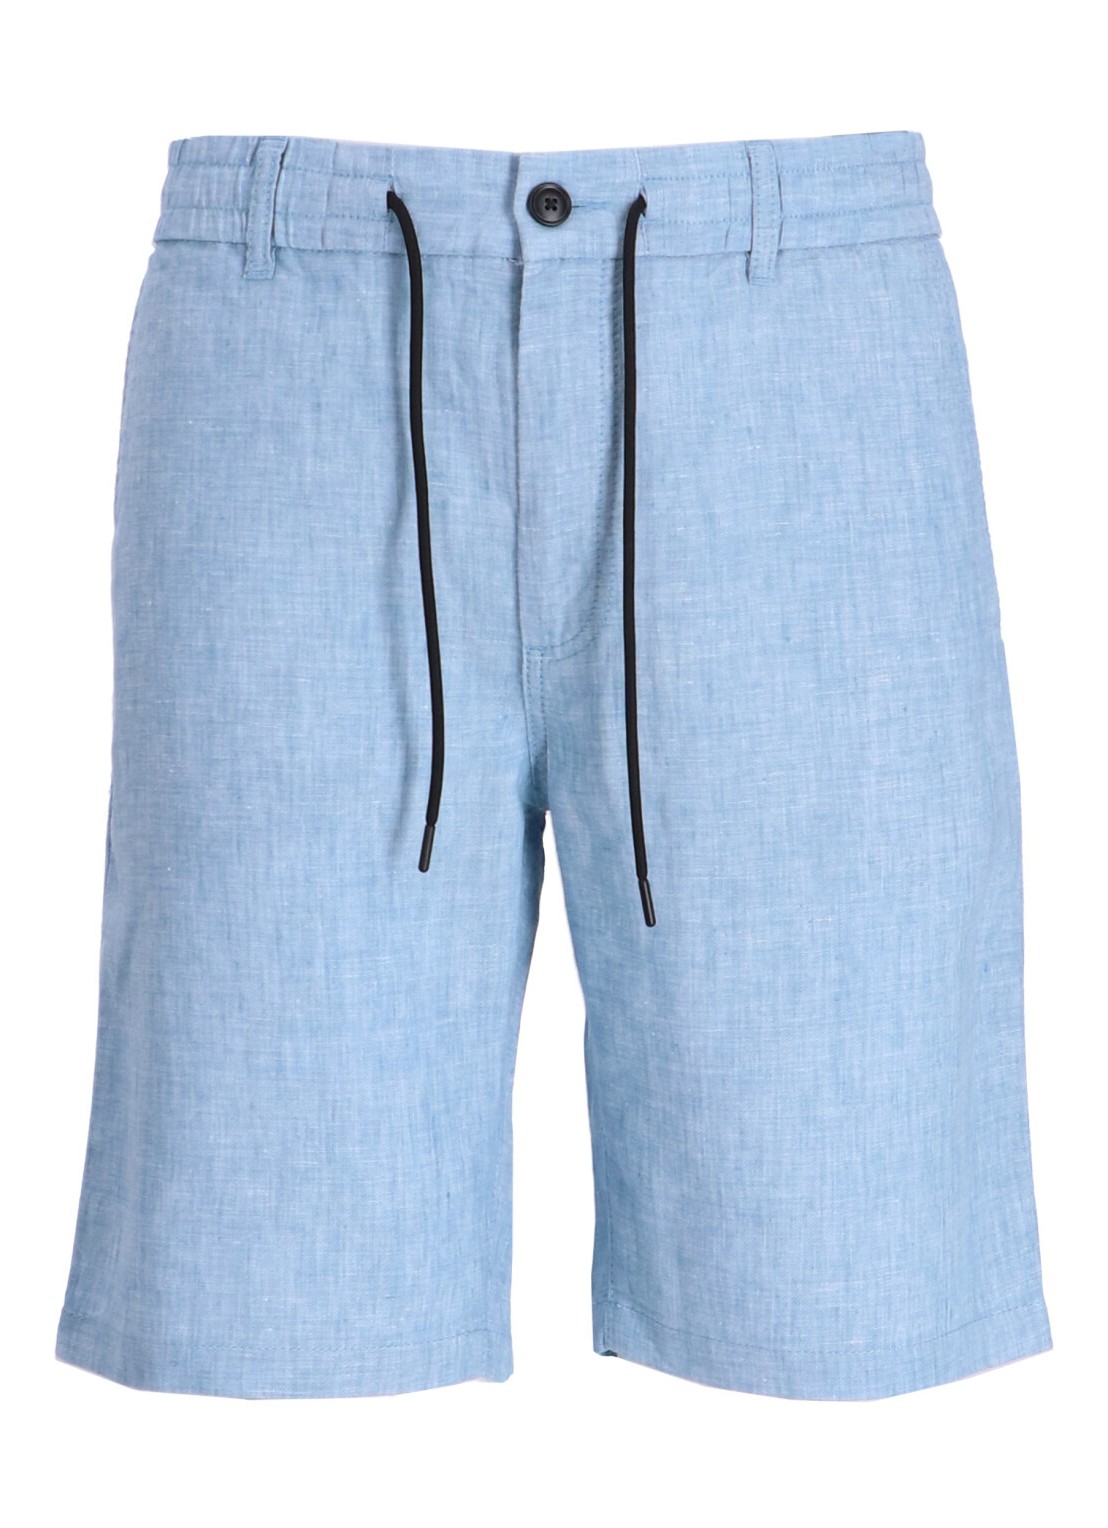 Pantalon corto boss short pant manchino-tapered-ds-1-s - 50513027 486 talla Azul
 